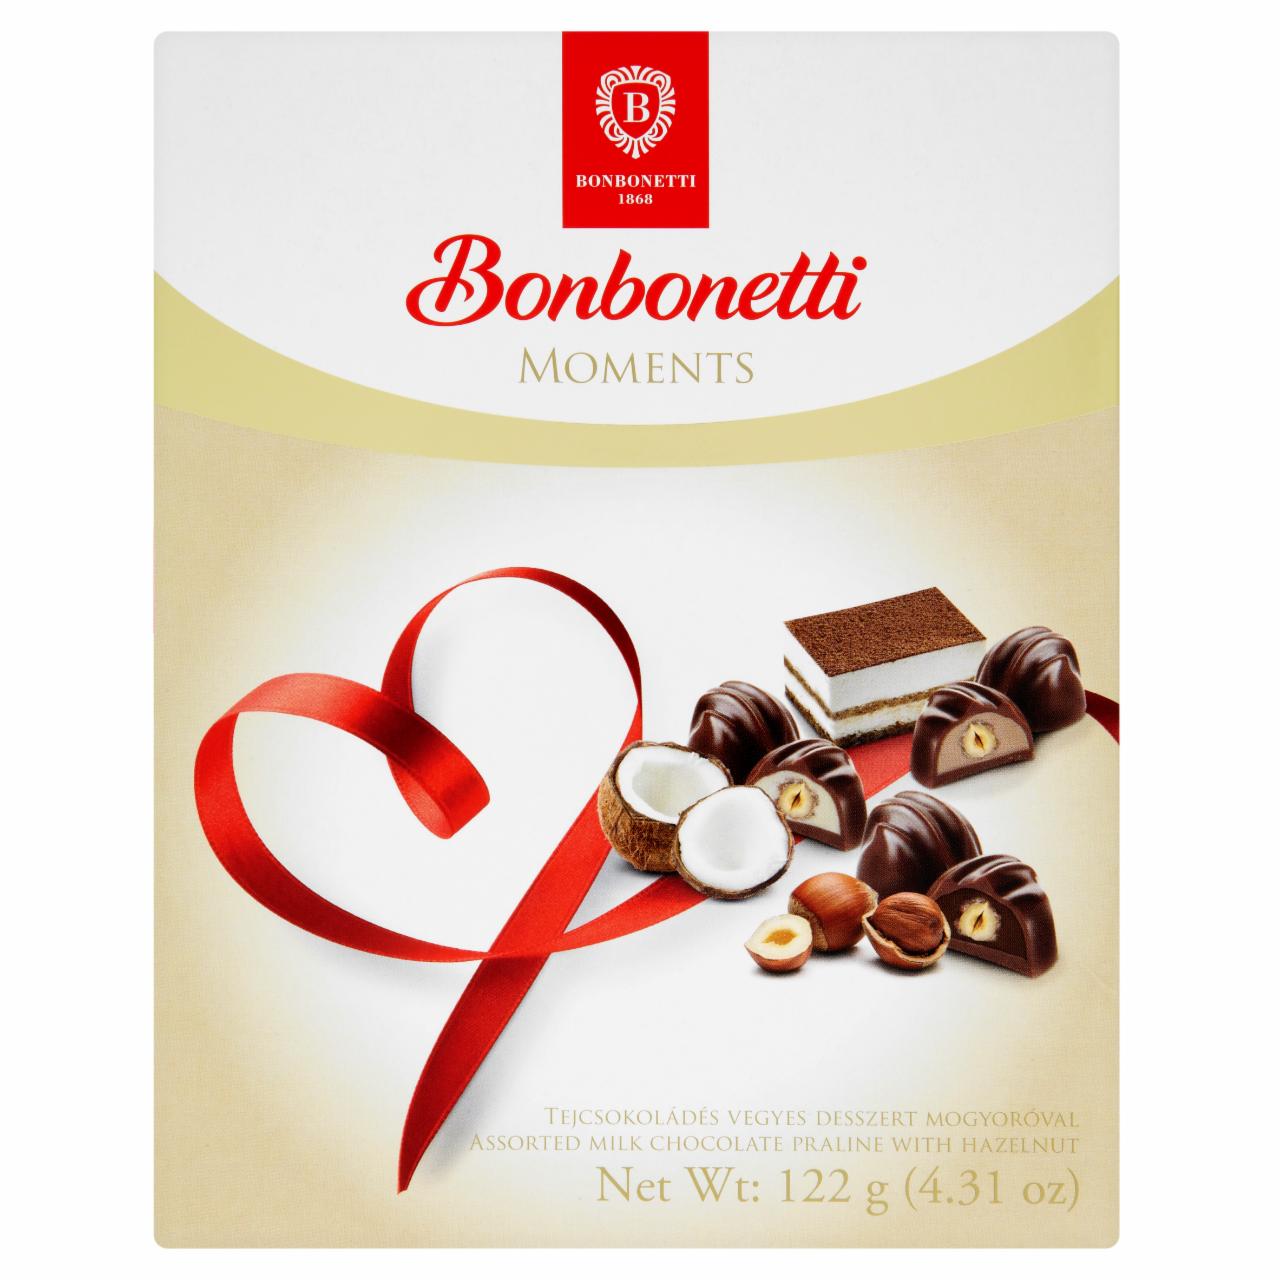 Képek - Bonbonetti Moments tejcsokoládé vegyes desszert mogyoróval 122 g